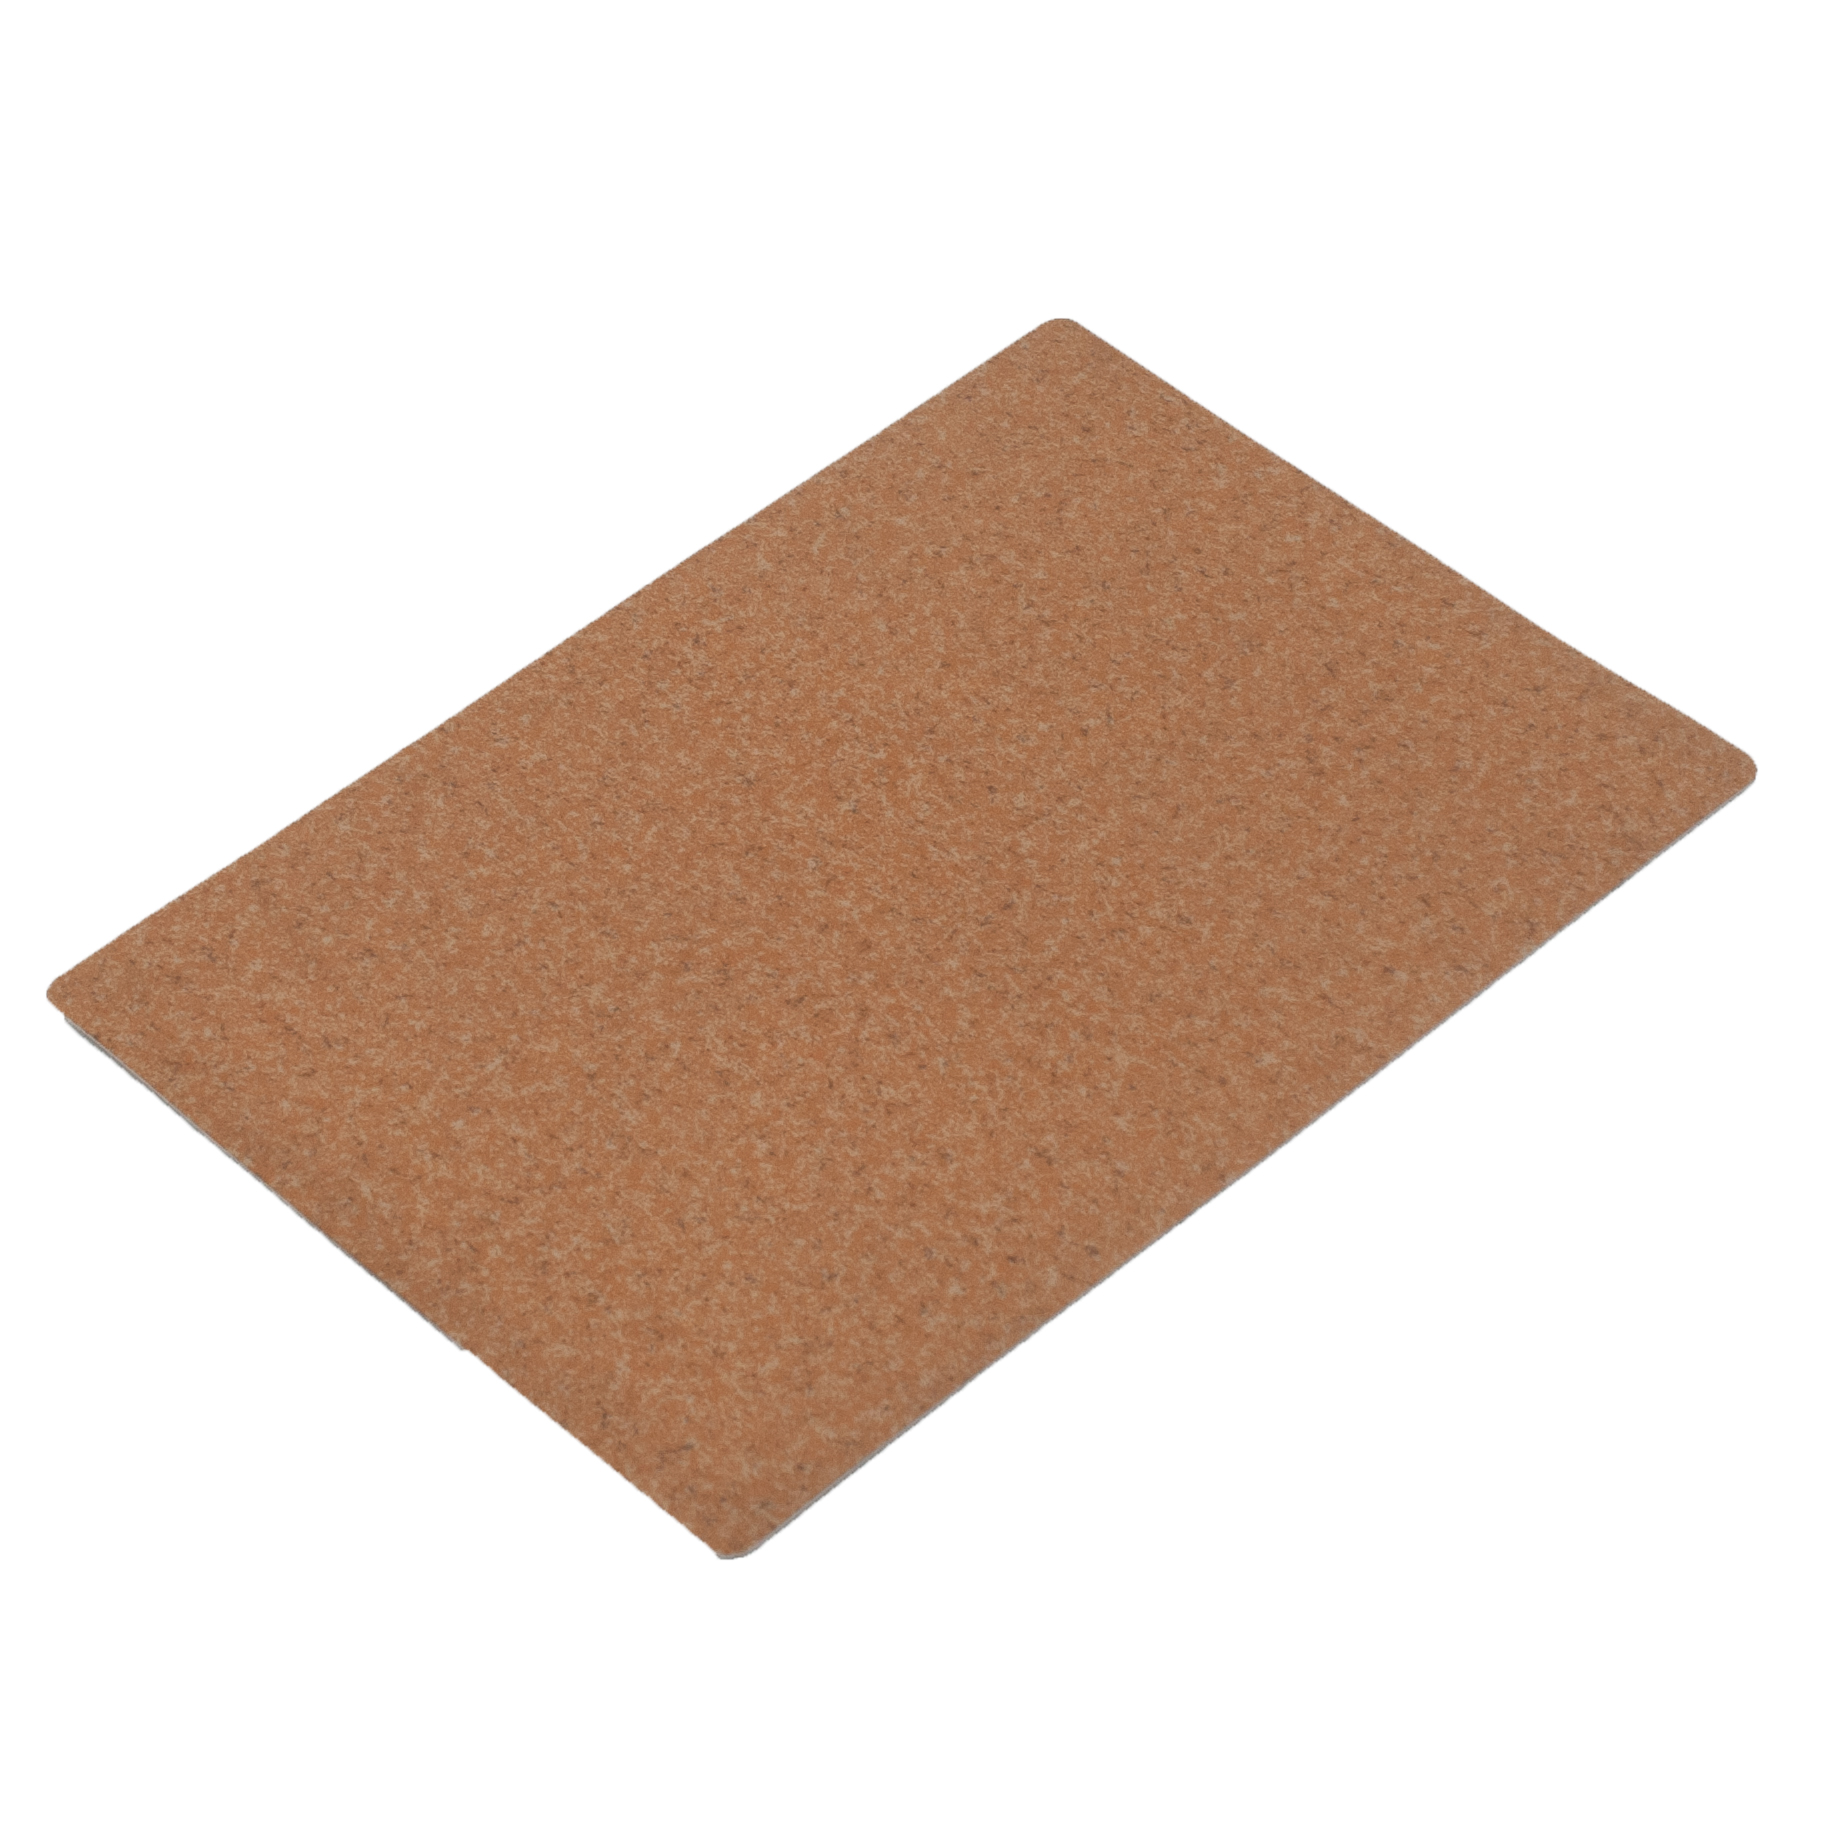 Heterogeneous PVC Flooring For Basement Sheet